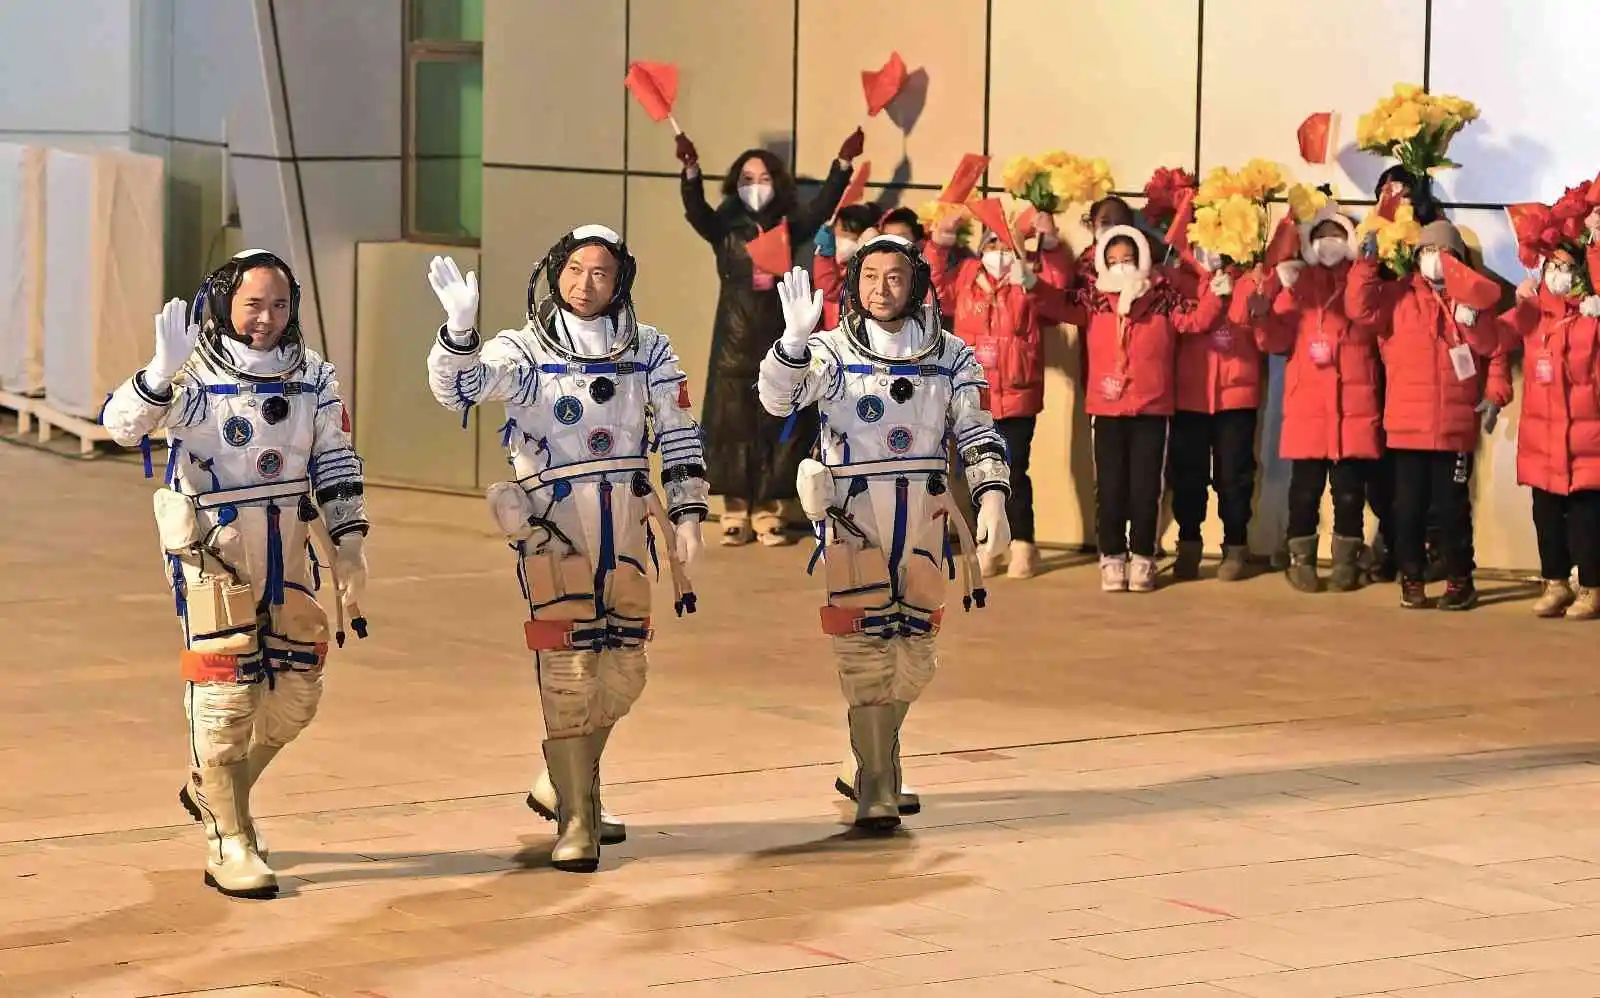 Çin, Tiangong Uzay İstasyonu'na görev değişimi için 3 astronot gönderdi
